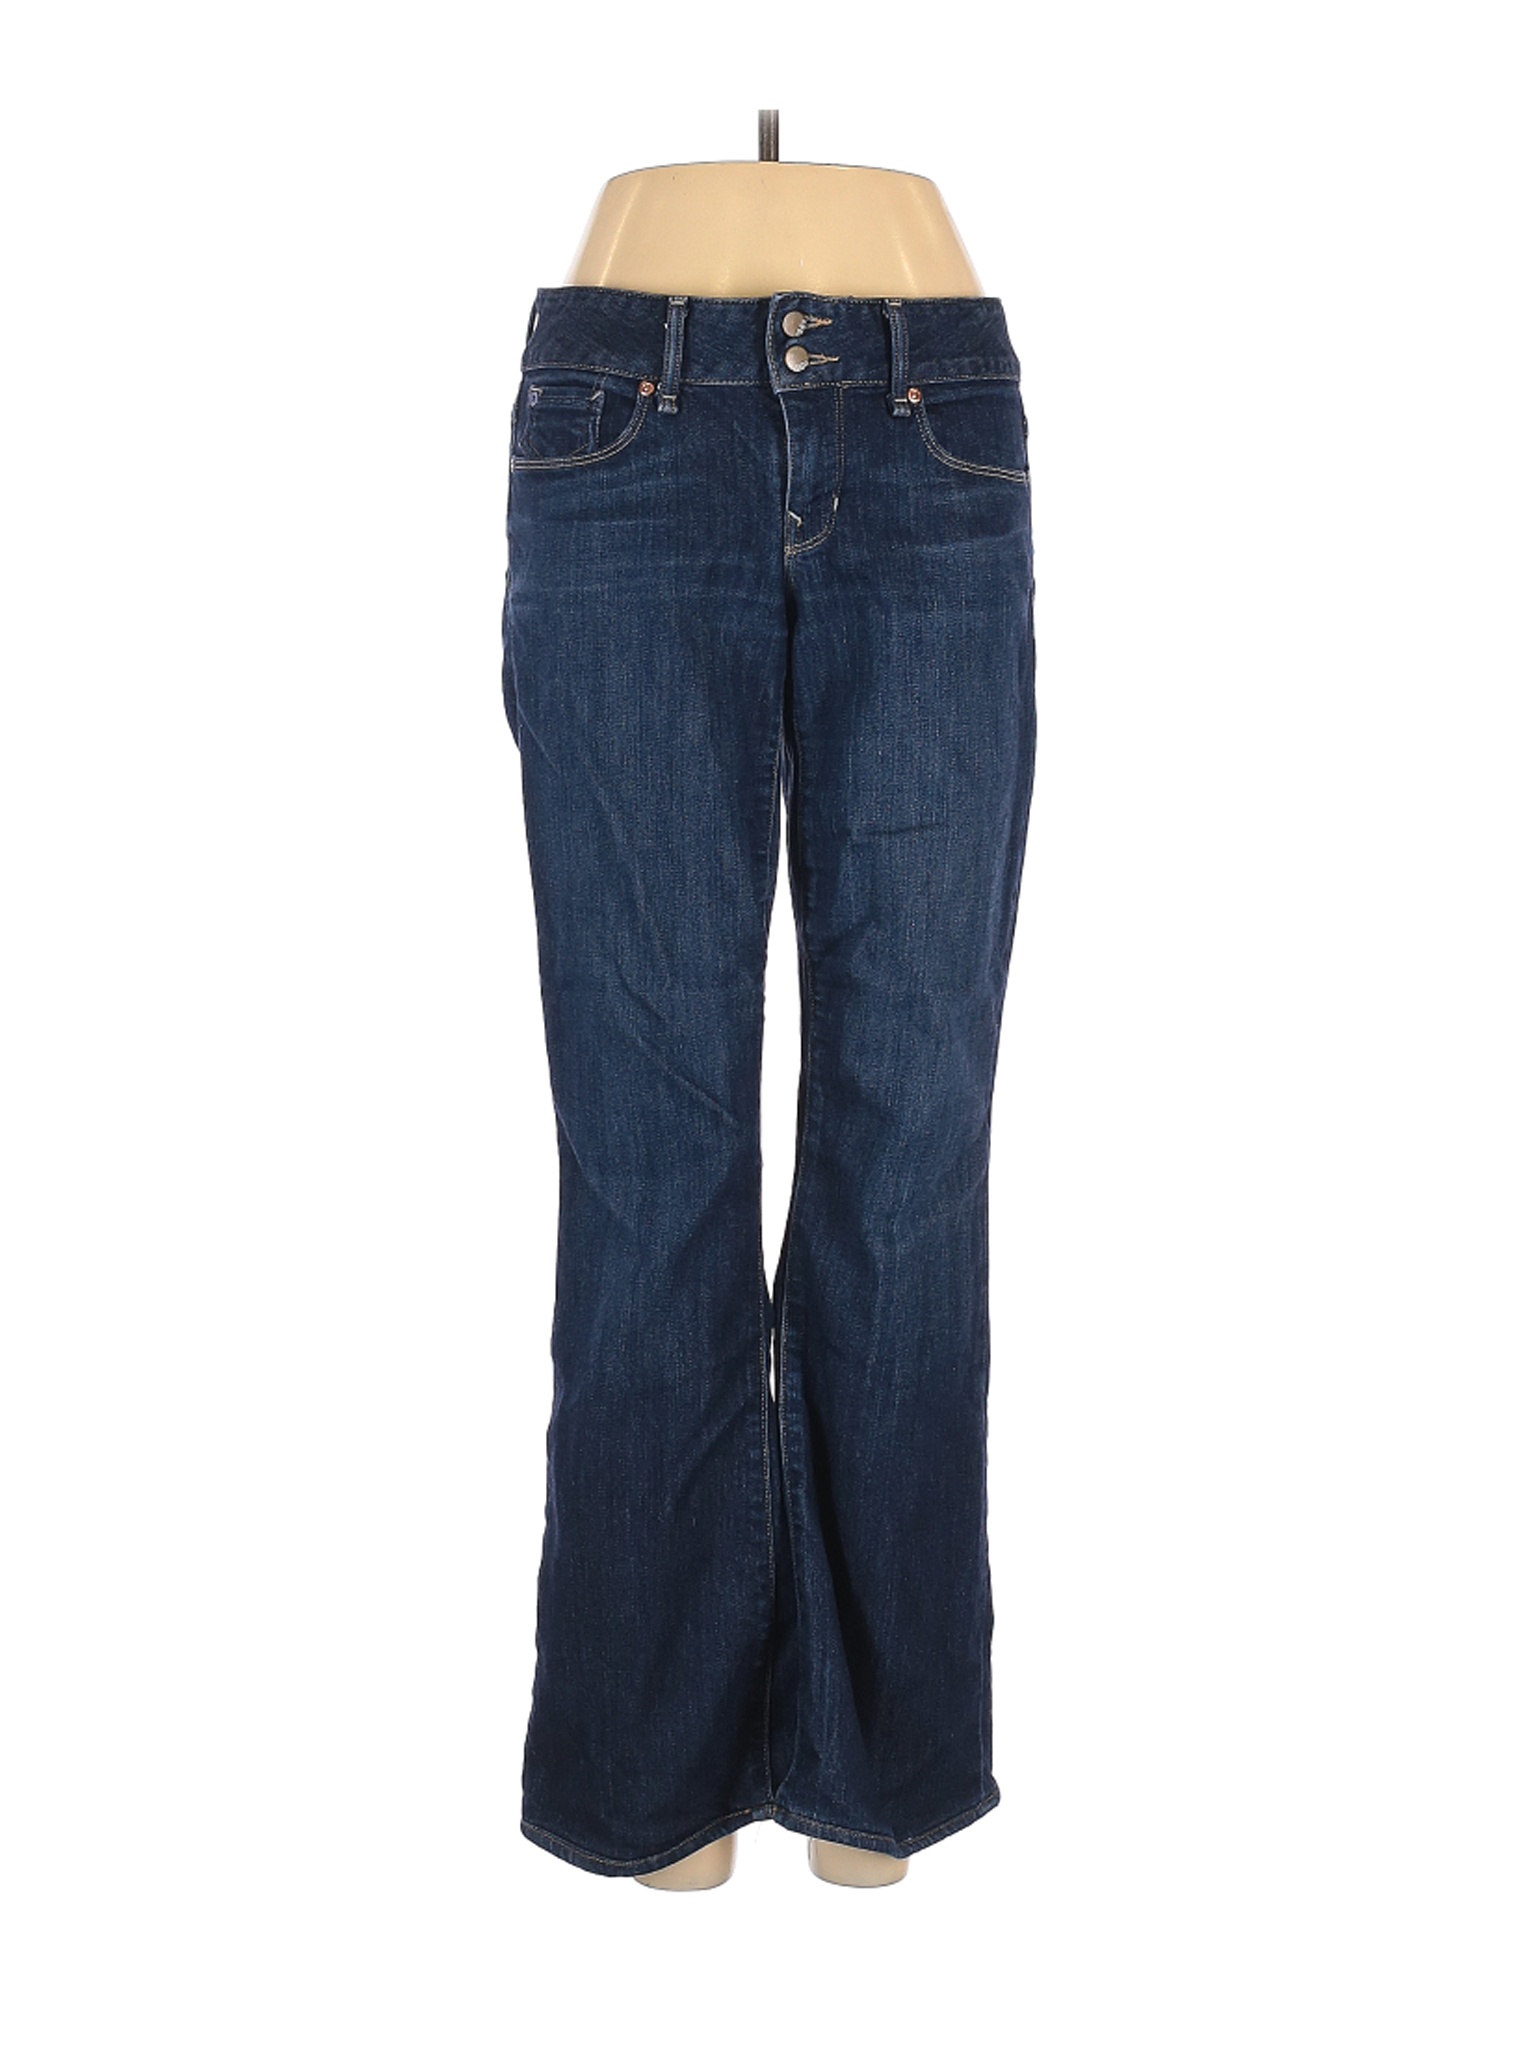 Gap Women Blue Jeans 4 Petites | eBay